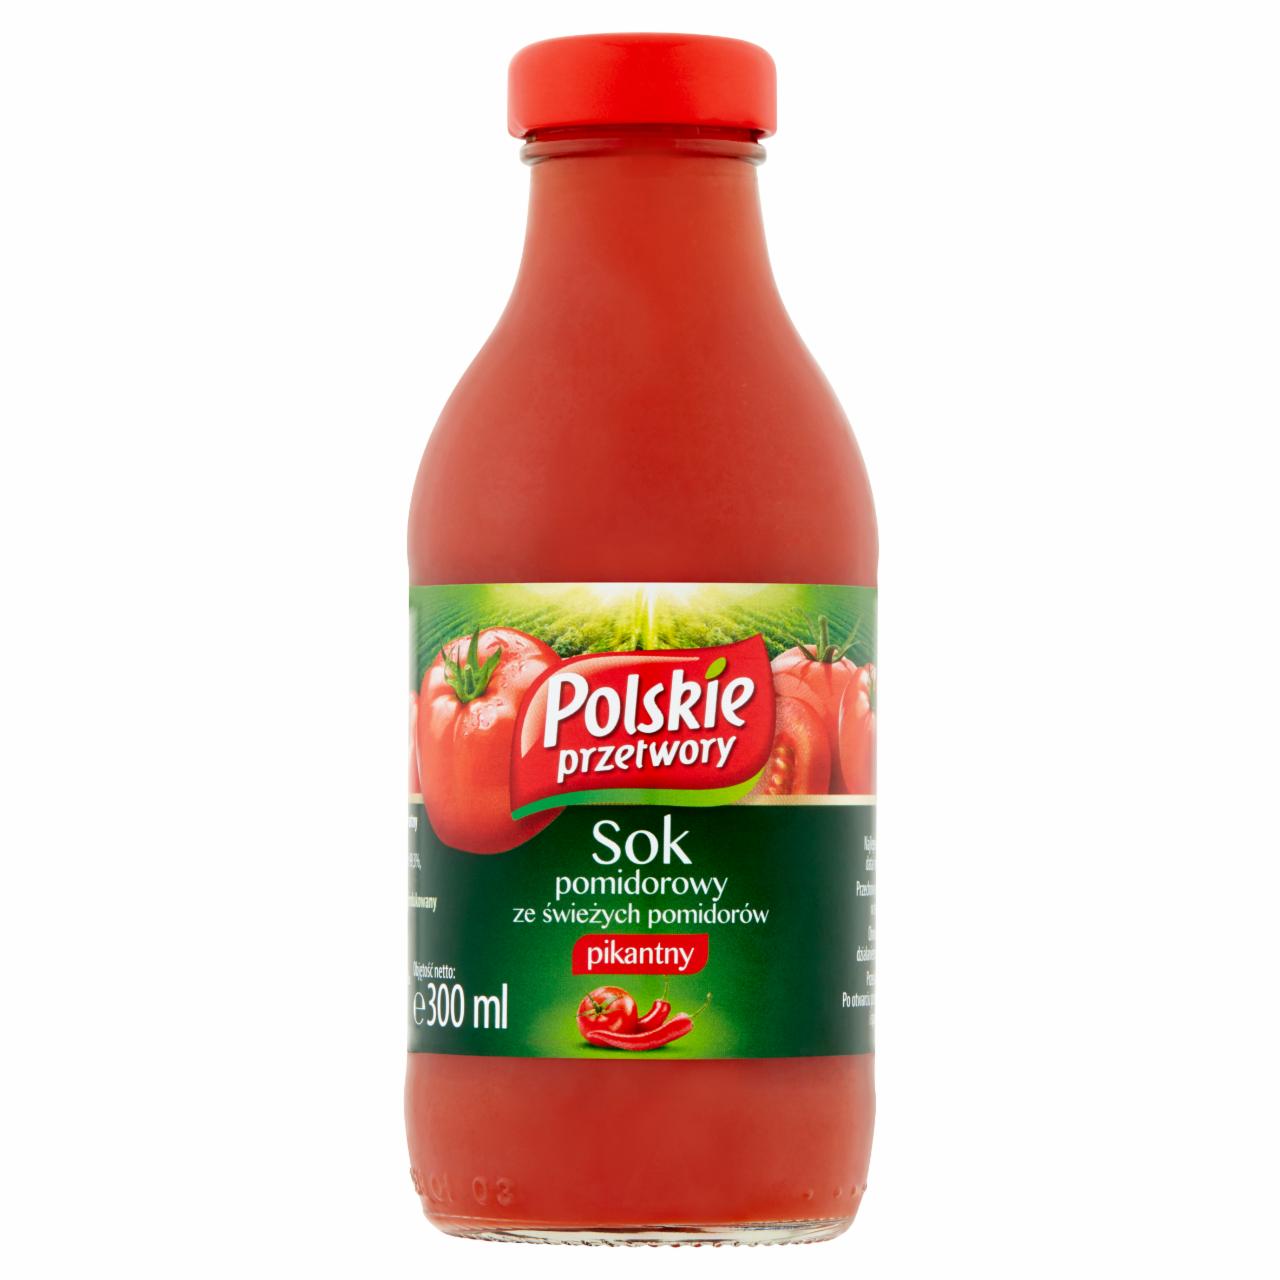 Zdjęcia - Sok pomidorowy ze świeżych pomidorów pikantny Polskie przetwory